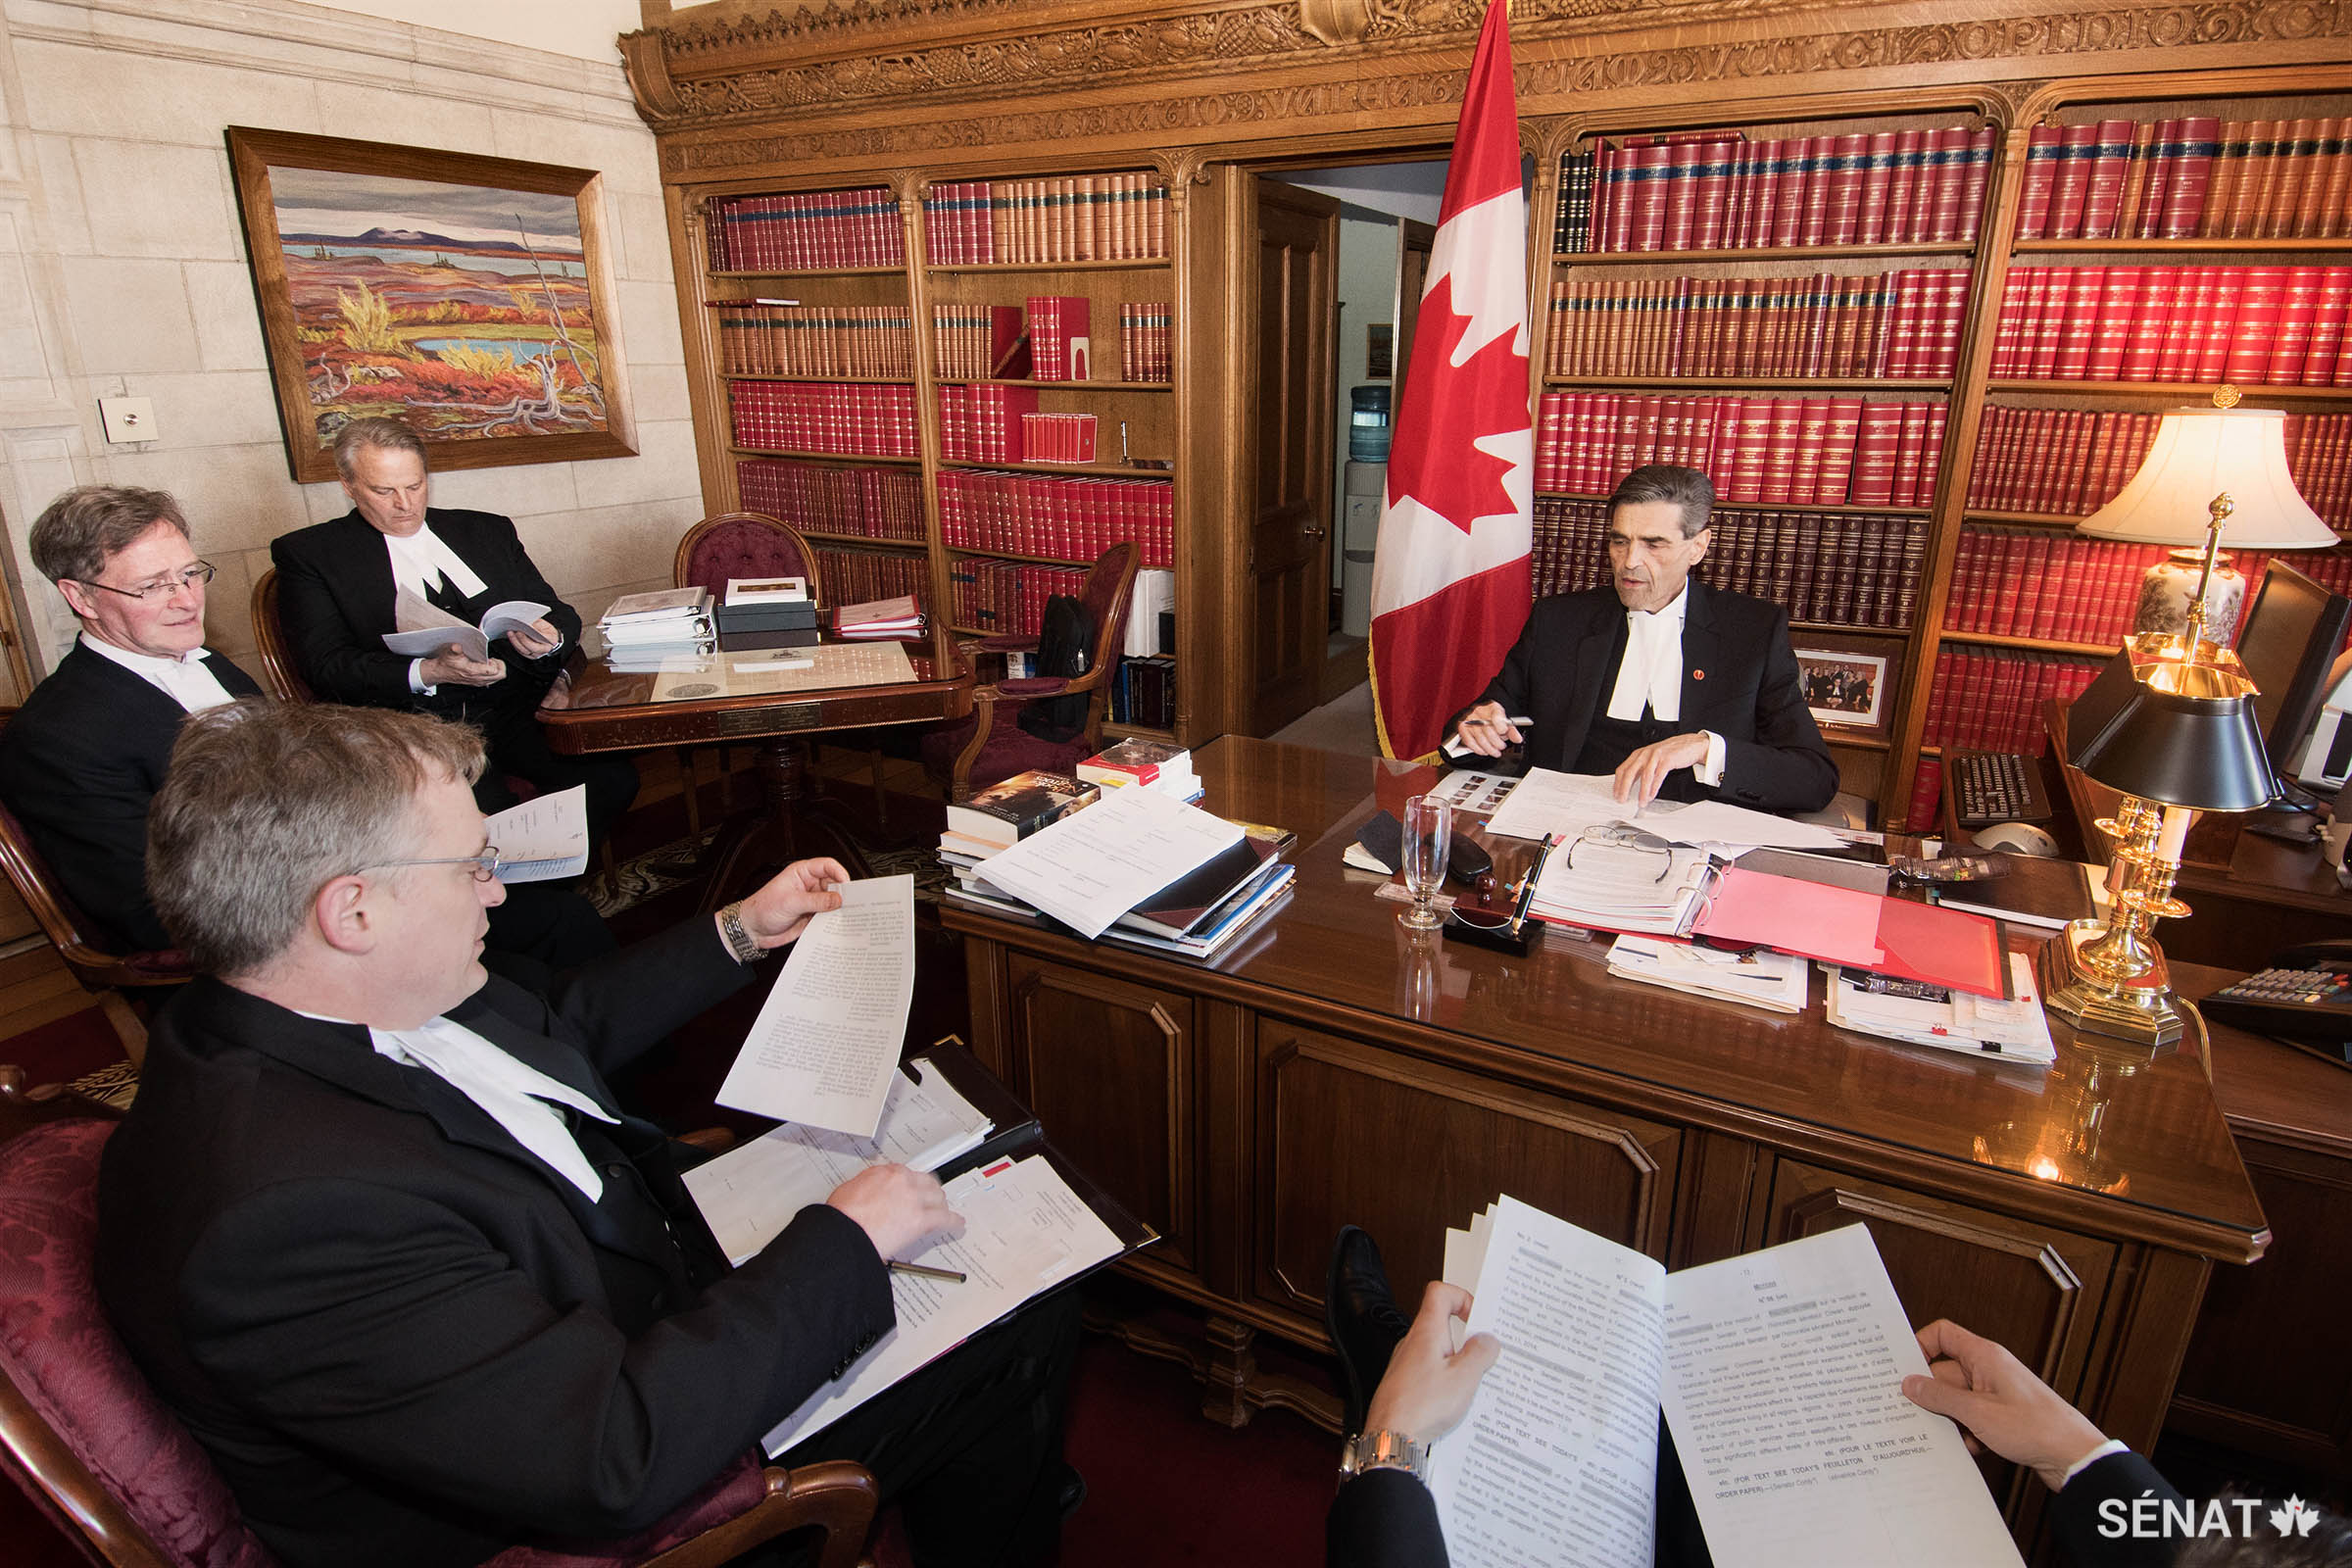 Veiller au bon fonctionnement du Sénat : le sénateur Pierre Claude Nolin, Président du Sénat de novembre 2014 à avril 2015, se réunit avec des greffiers à la procédure pour examiner l’ordre du jour d’une prochaine séance du Sénat.